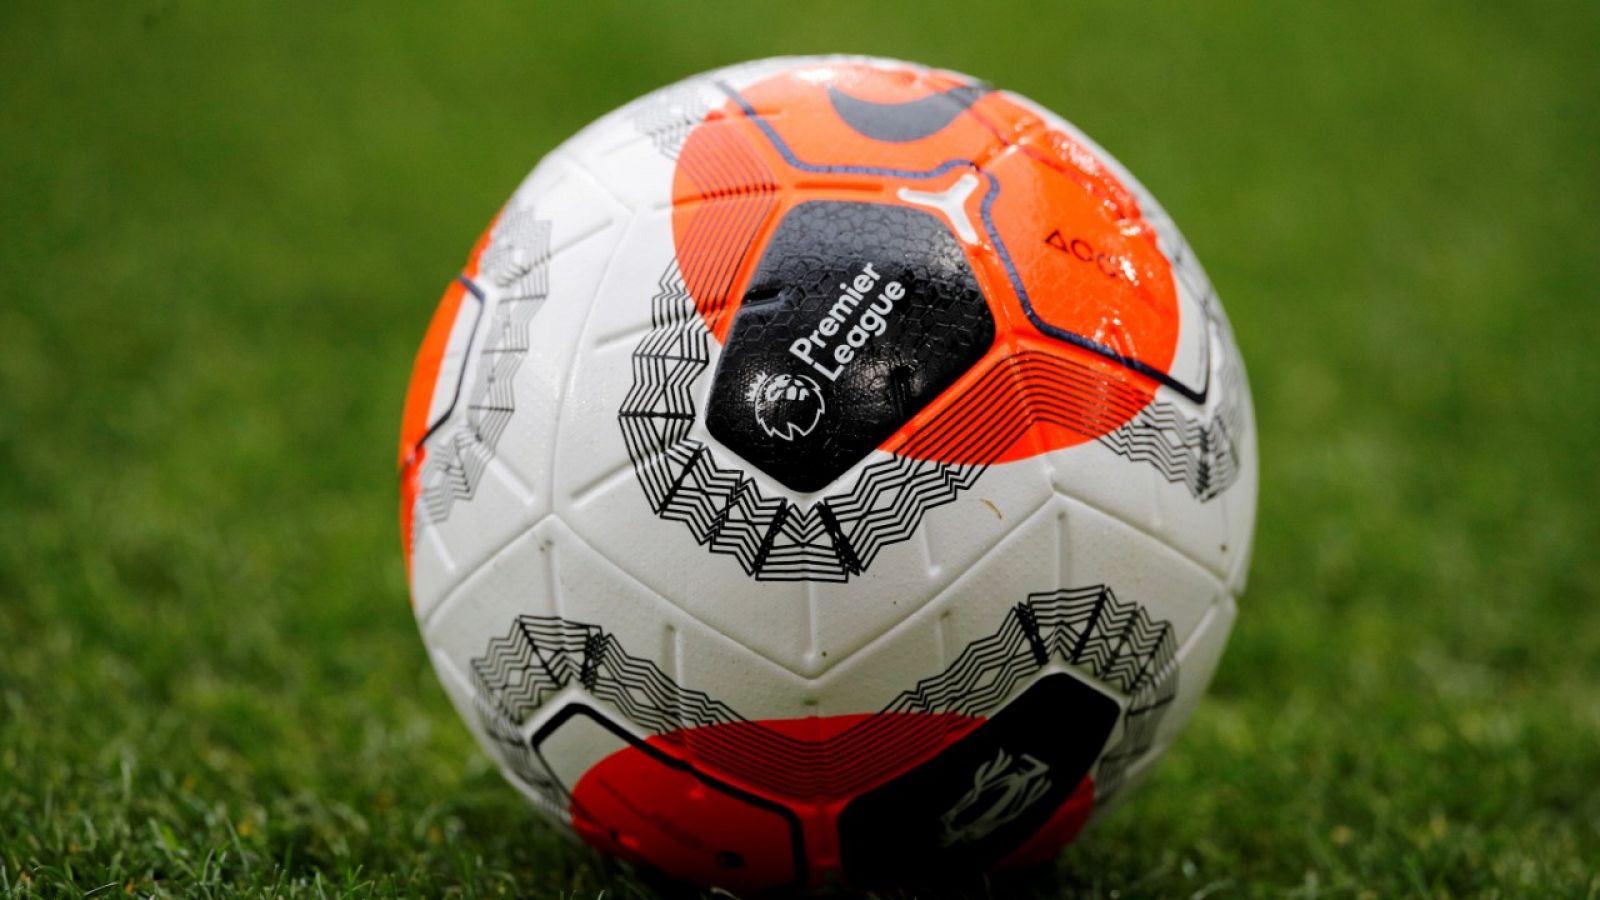 Imagen del balón oficial de la Premier League de la temporada 2019-2020.